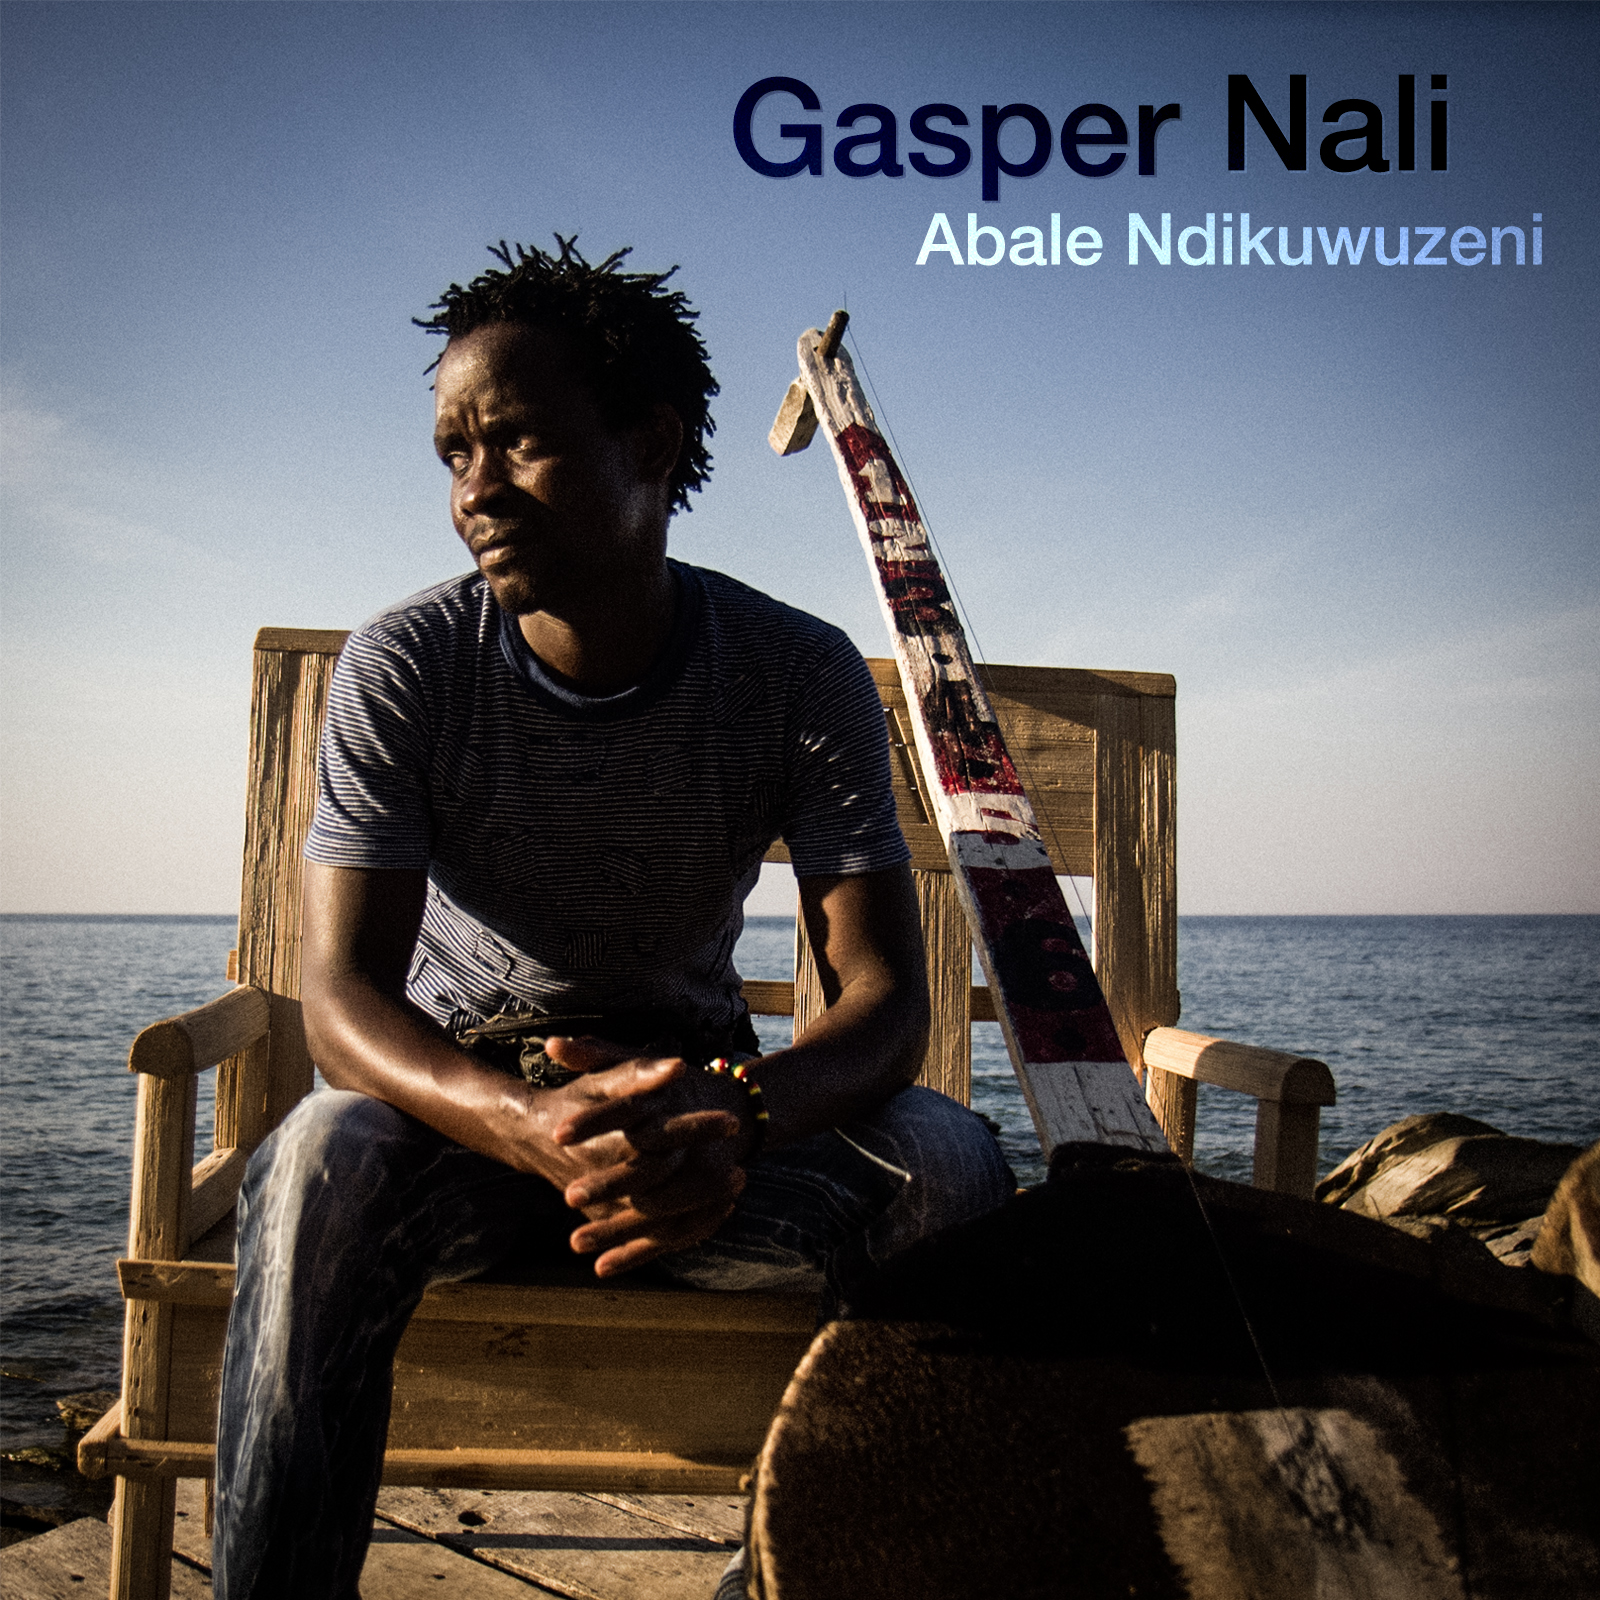 Gasper Nali album release date